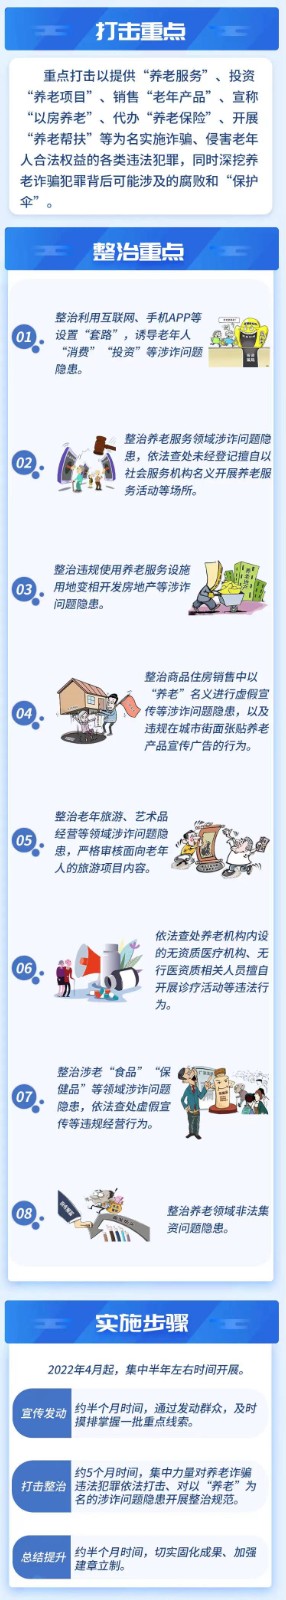 图解丨江苏省打击整治养老诈骗专项行动